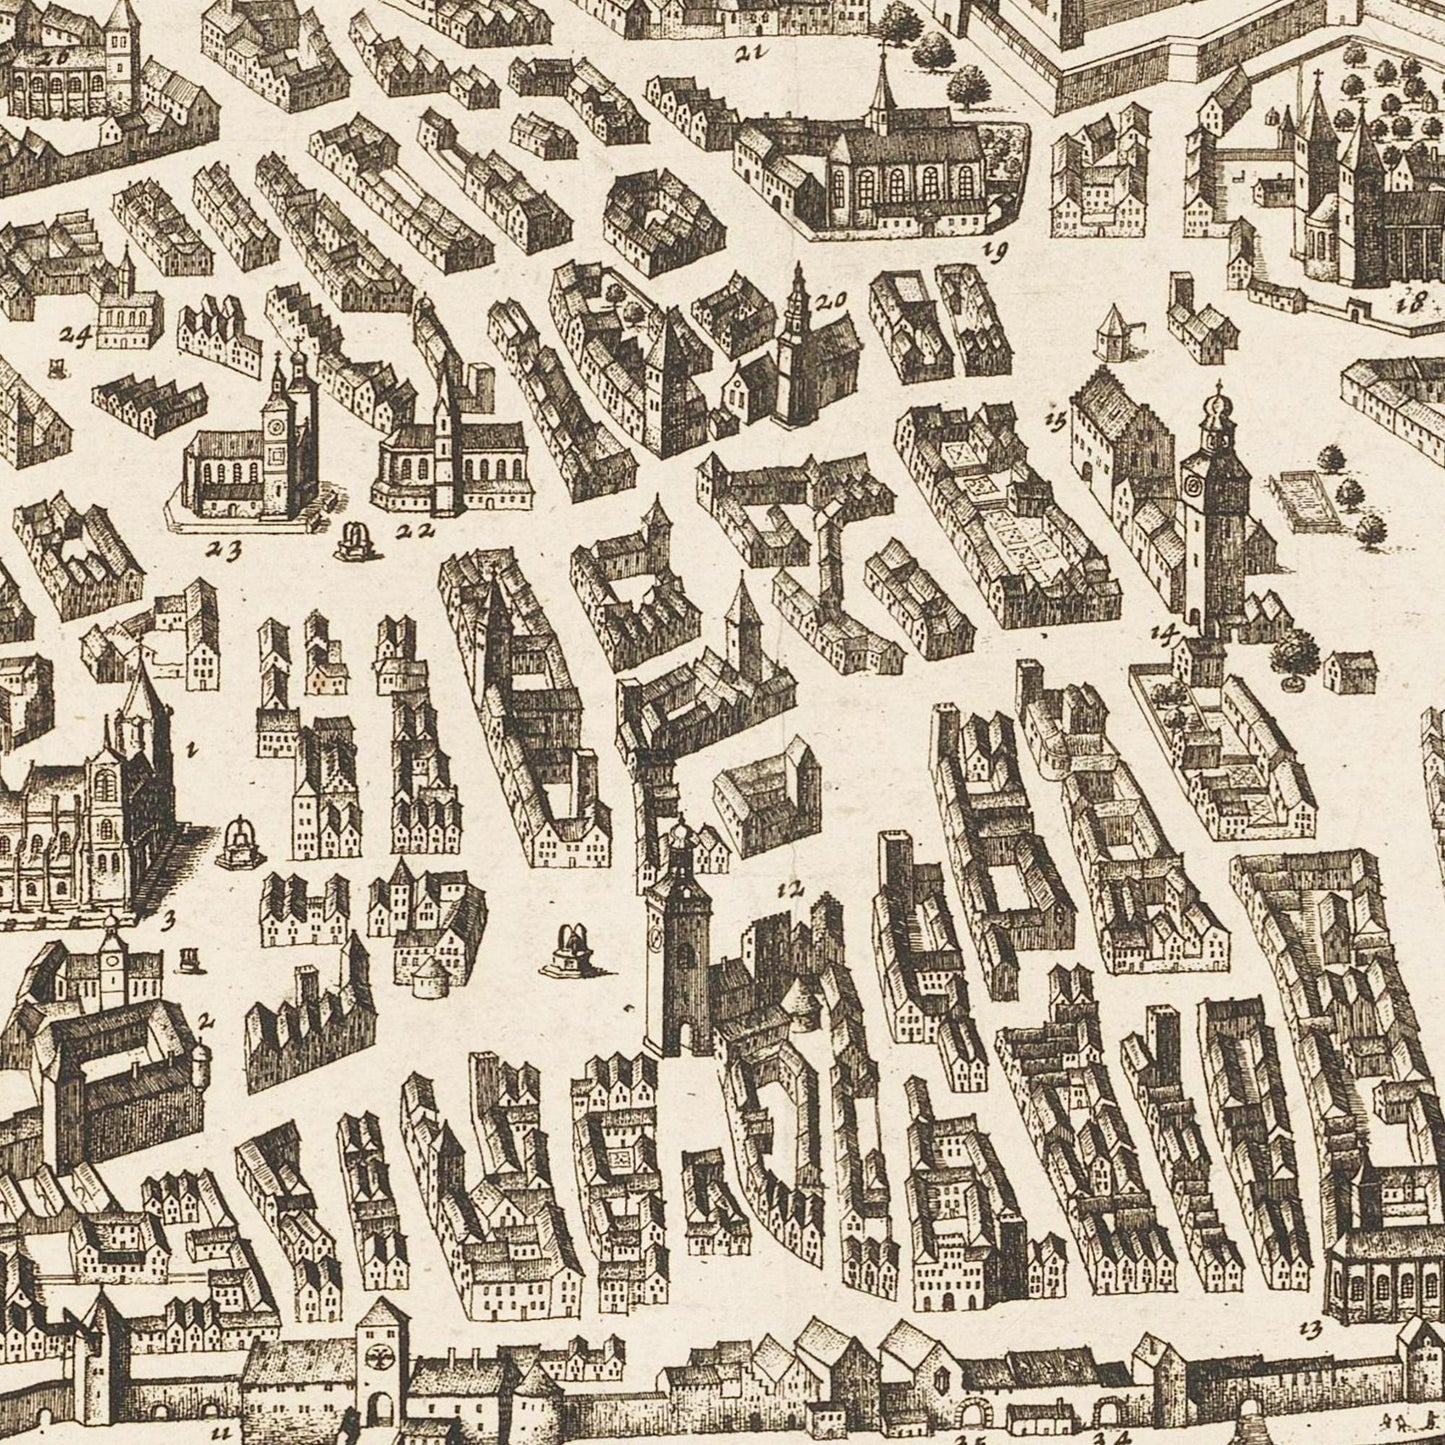 Historische Stadtansicht Regensburg um 1700